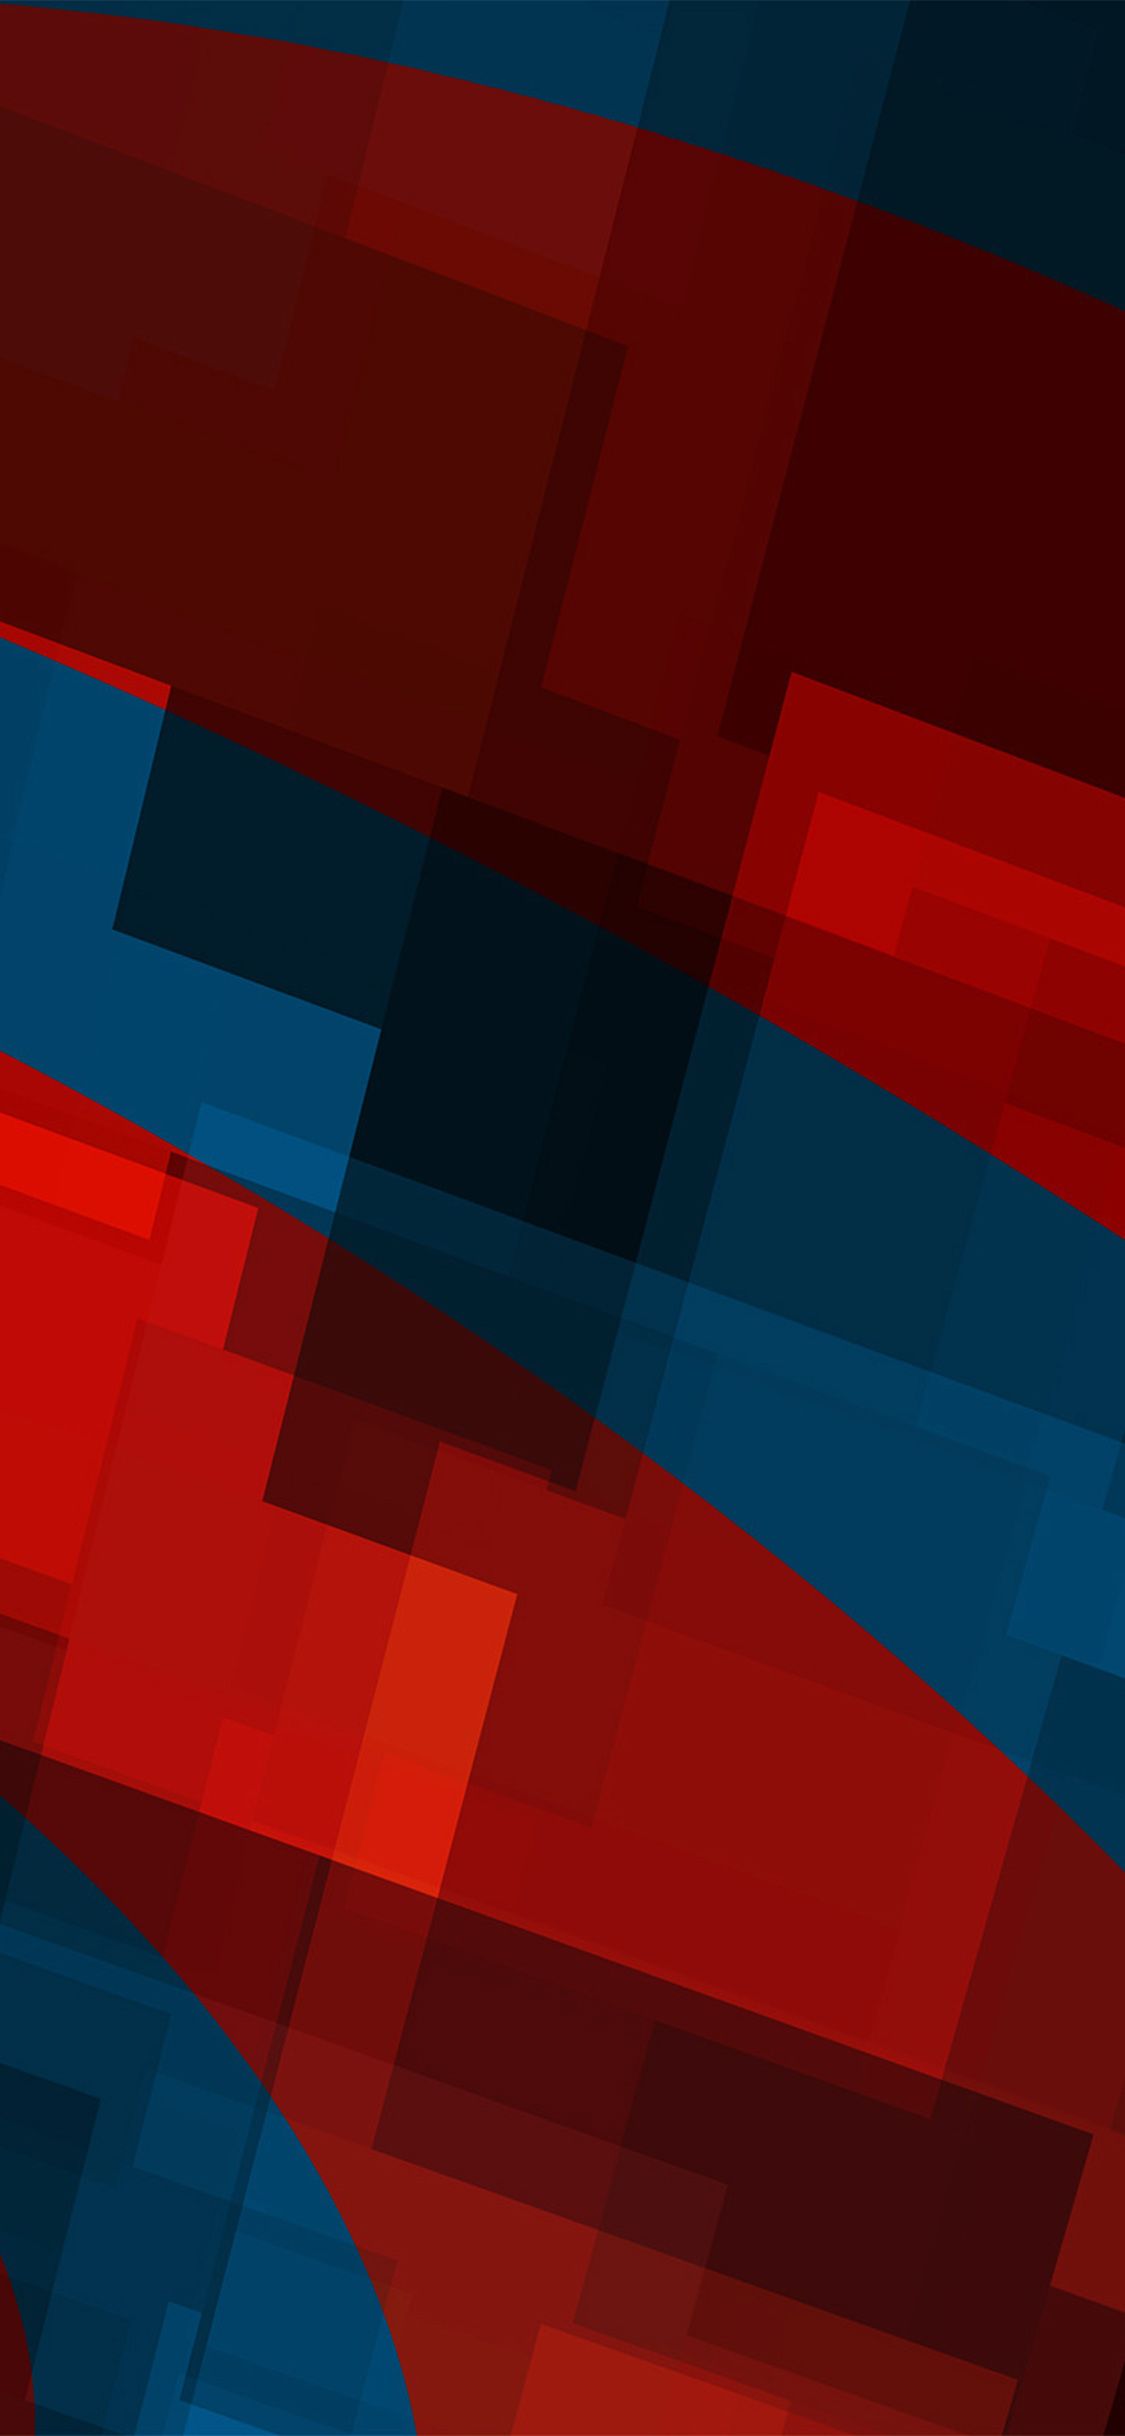 iPhone X wallpaper. art red blue block